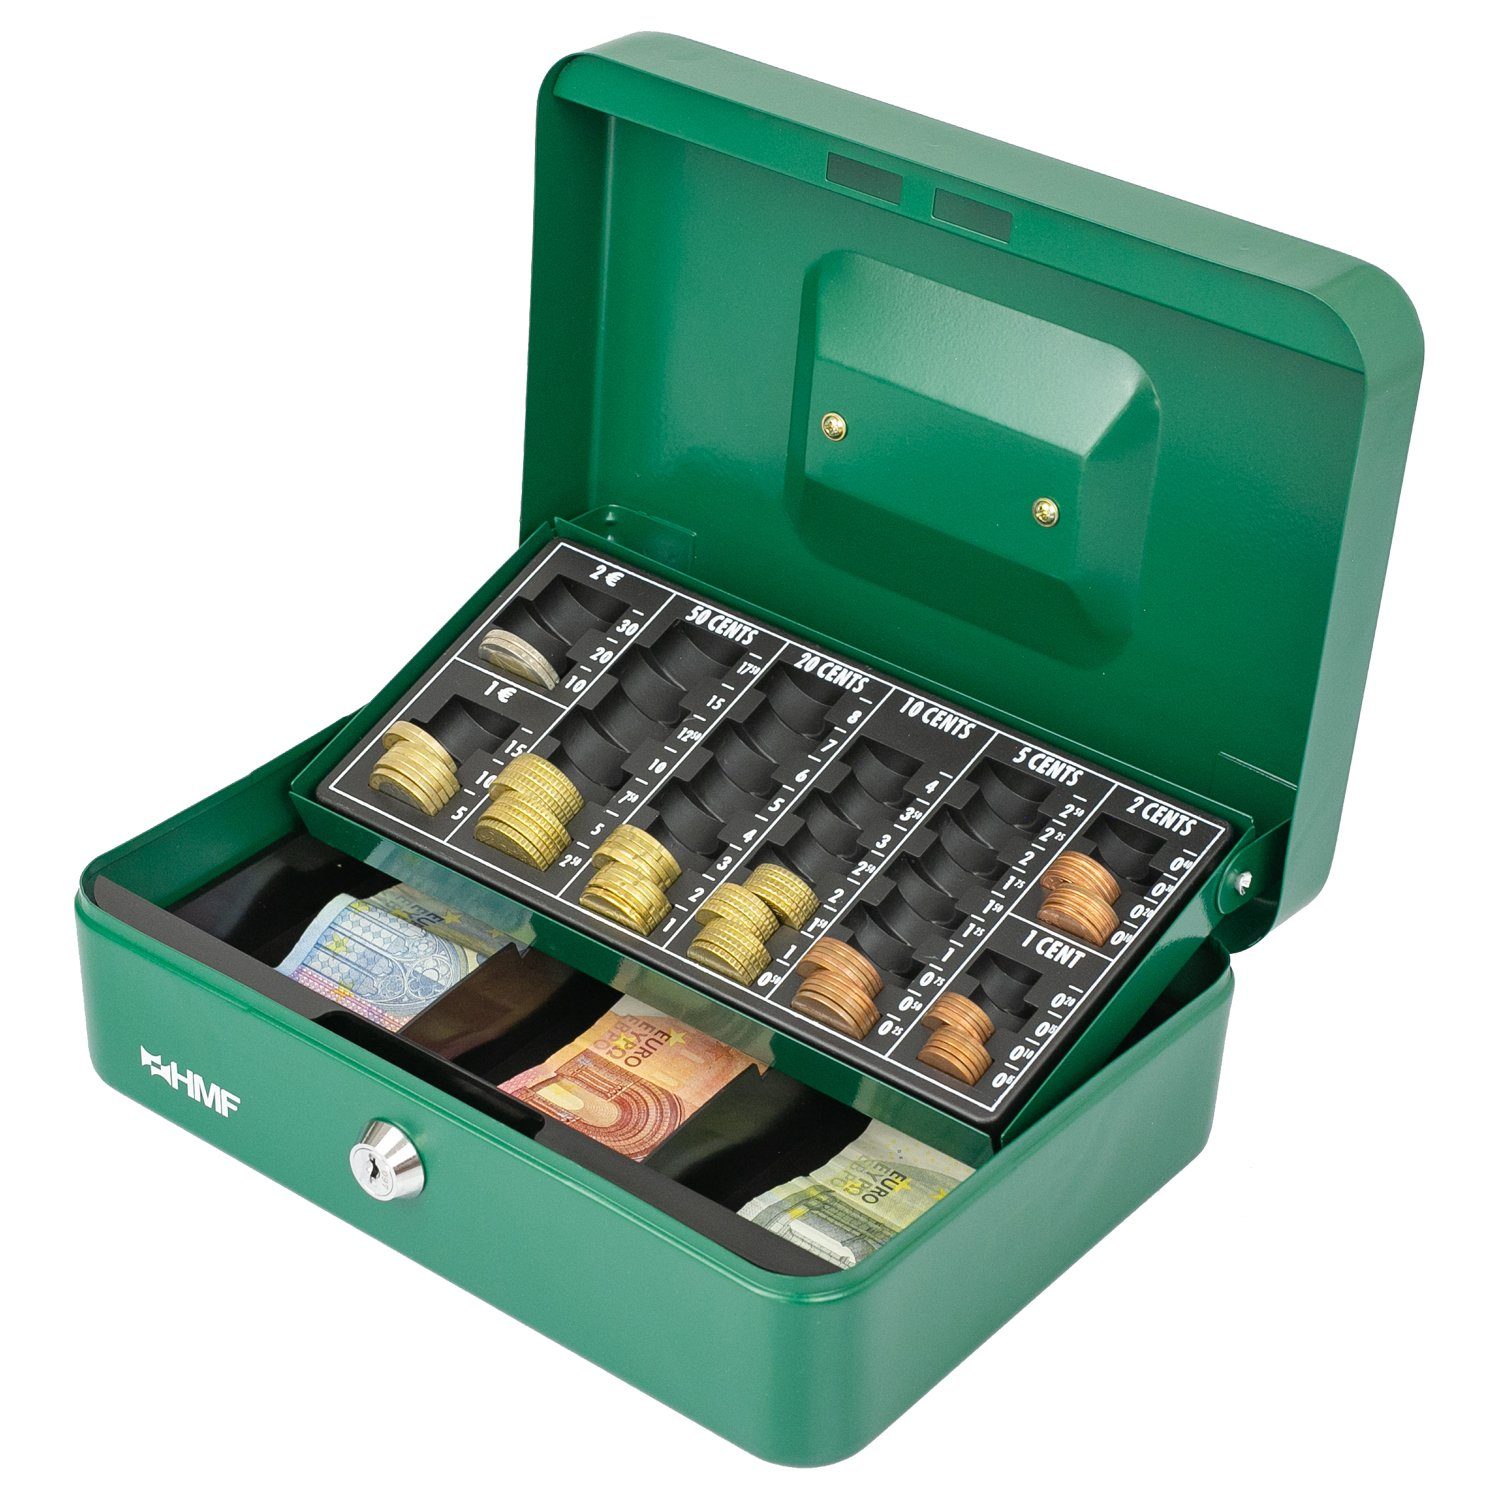 HMF Geldkassette abschließbare Bargeldkasse mit robuste Geldbox Münzzählbrett mit cm grün Scheinfach, Schlüssel, und 25x18x9